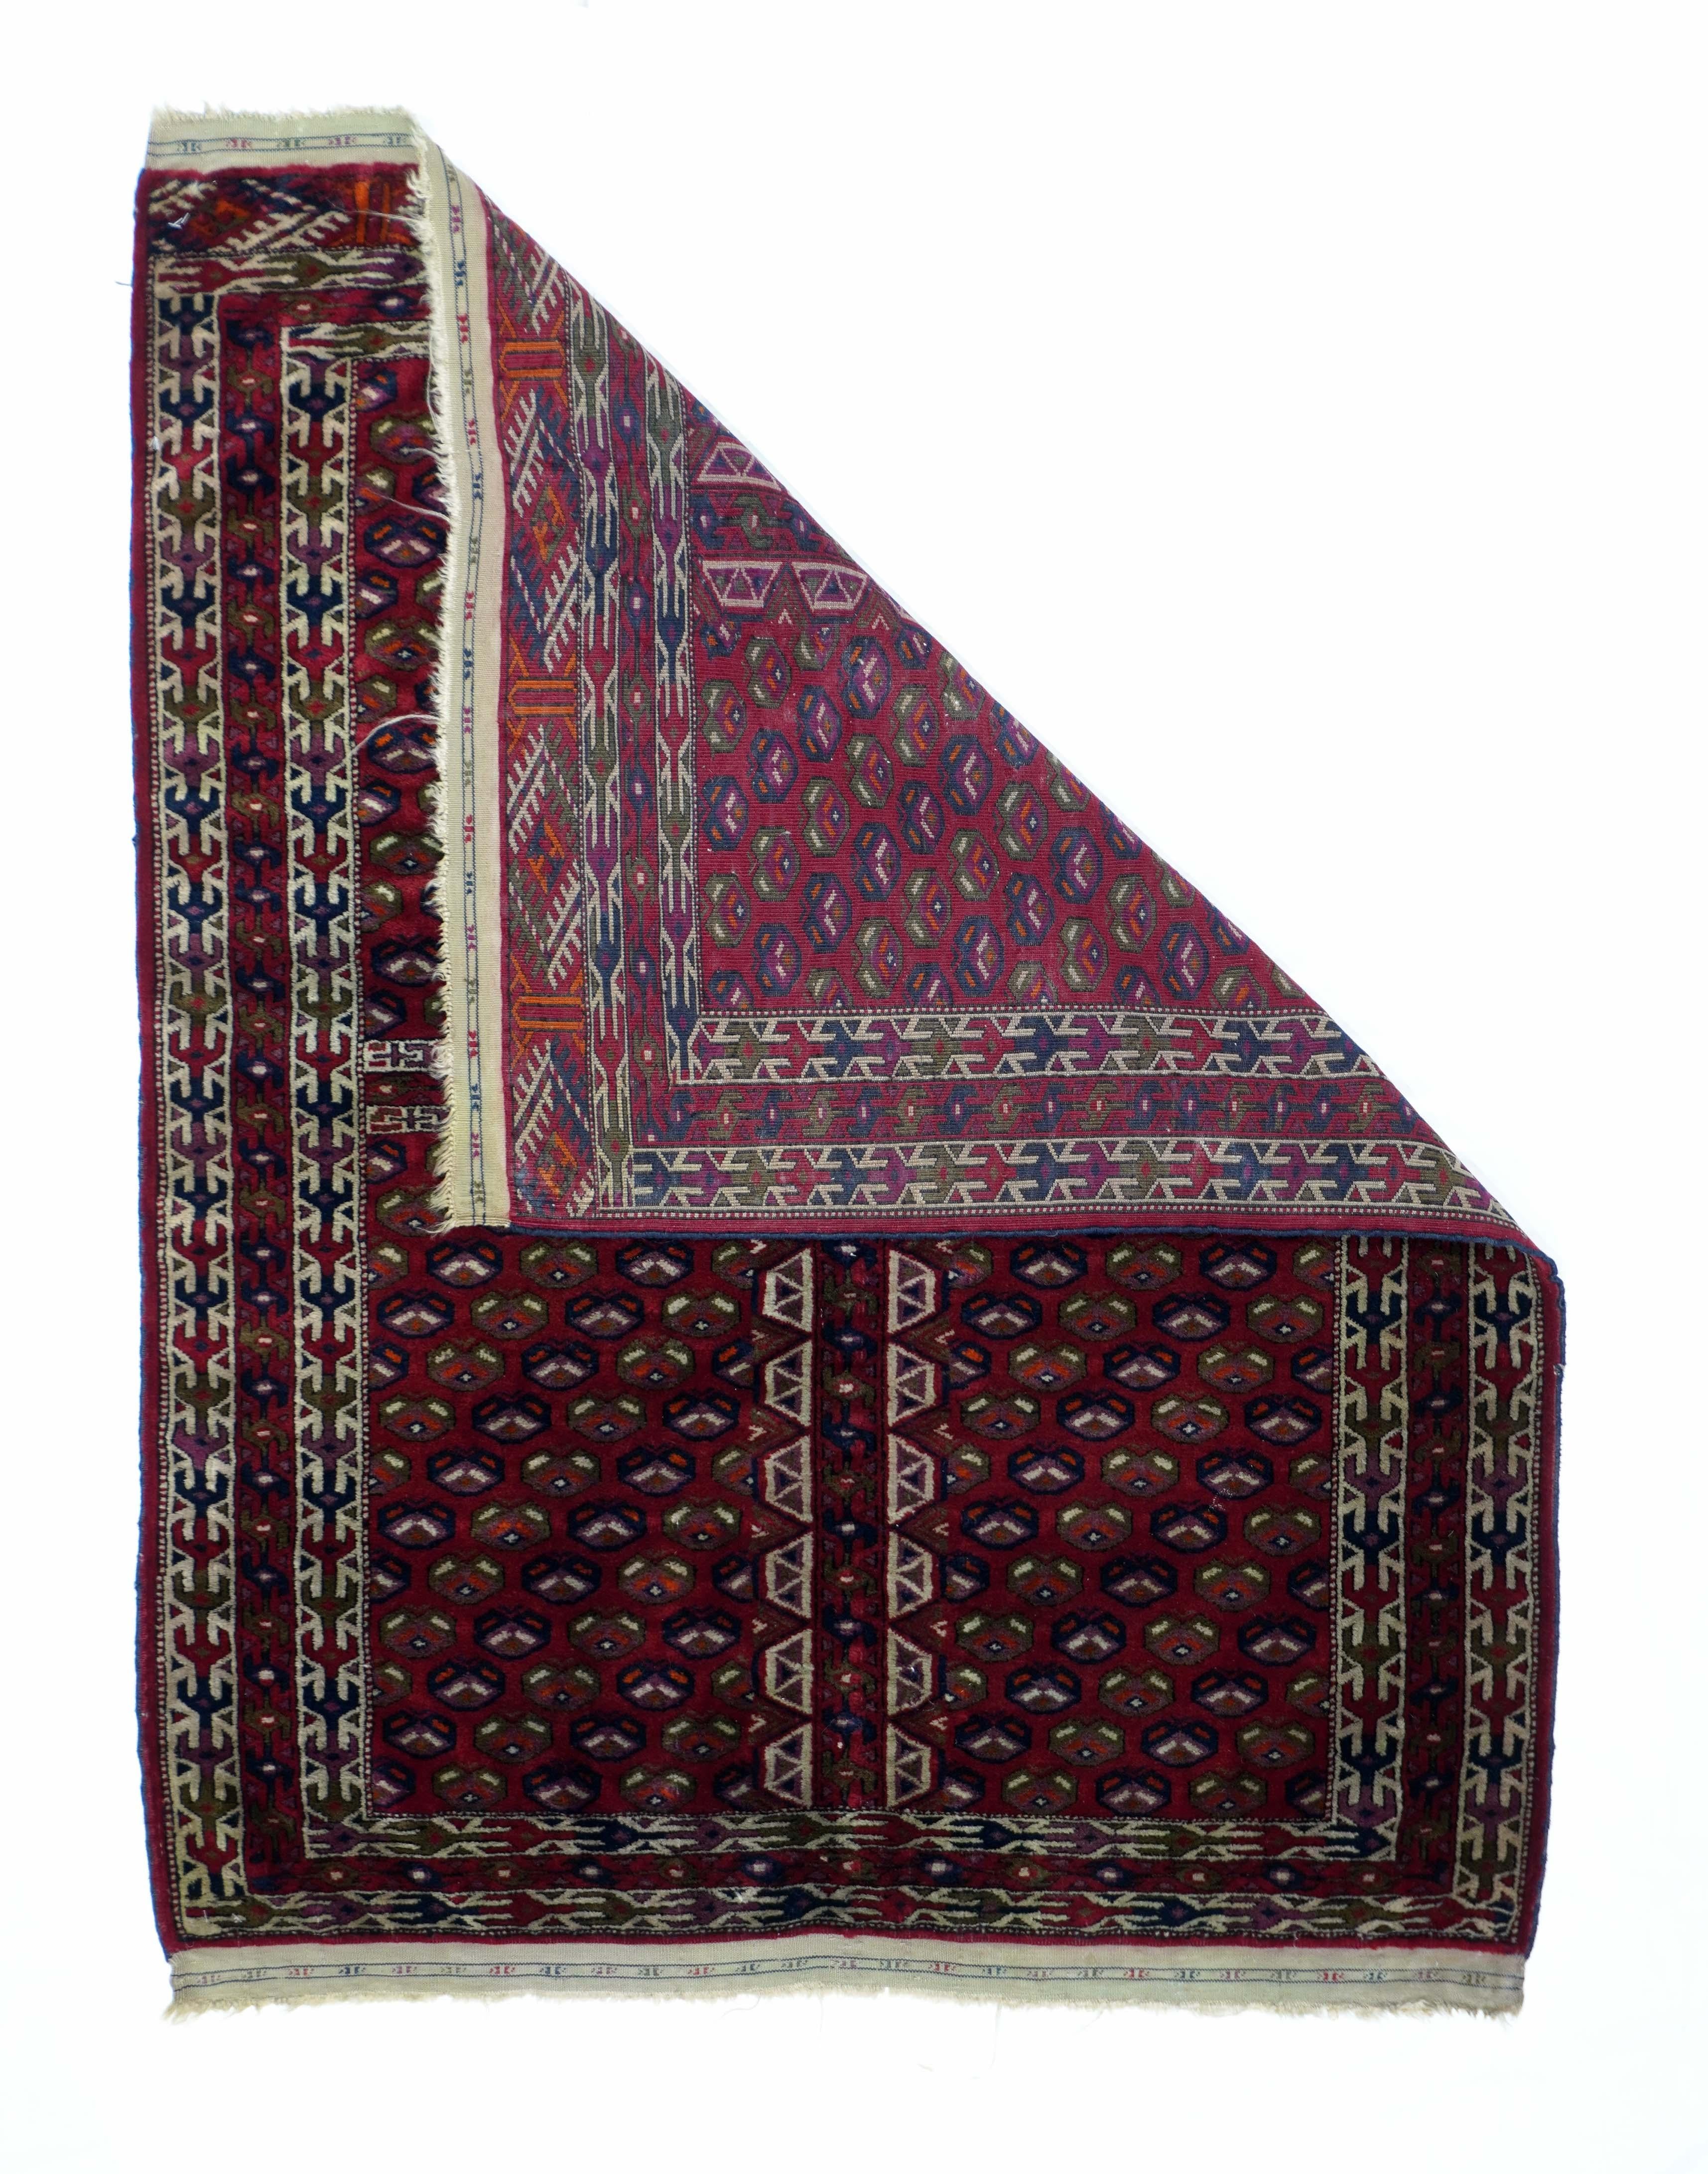 Antiker russischer Yamud-Bokara-Teppich, Maße: 3'5'' x 4'2''. Leberfarbenes, gevierteltes Feld mit gleichmäßigen Farbdiagonalen aus unidirektionalen kleinen Blüten. Doppelte elfenbeinfarbene Hauptbordüren mit Fischgrätenmuster. Die zentrale